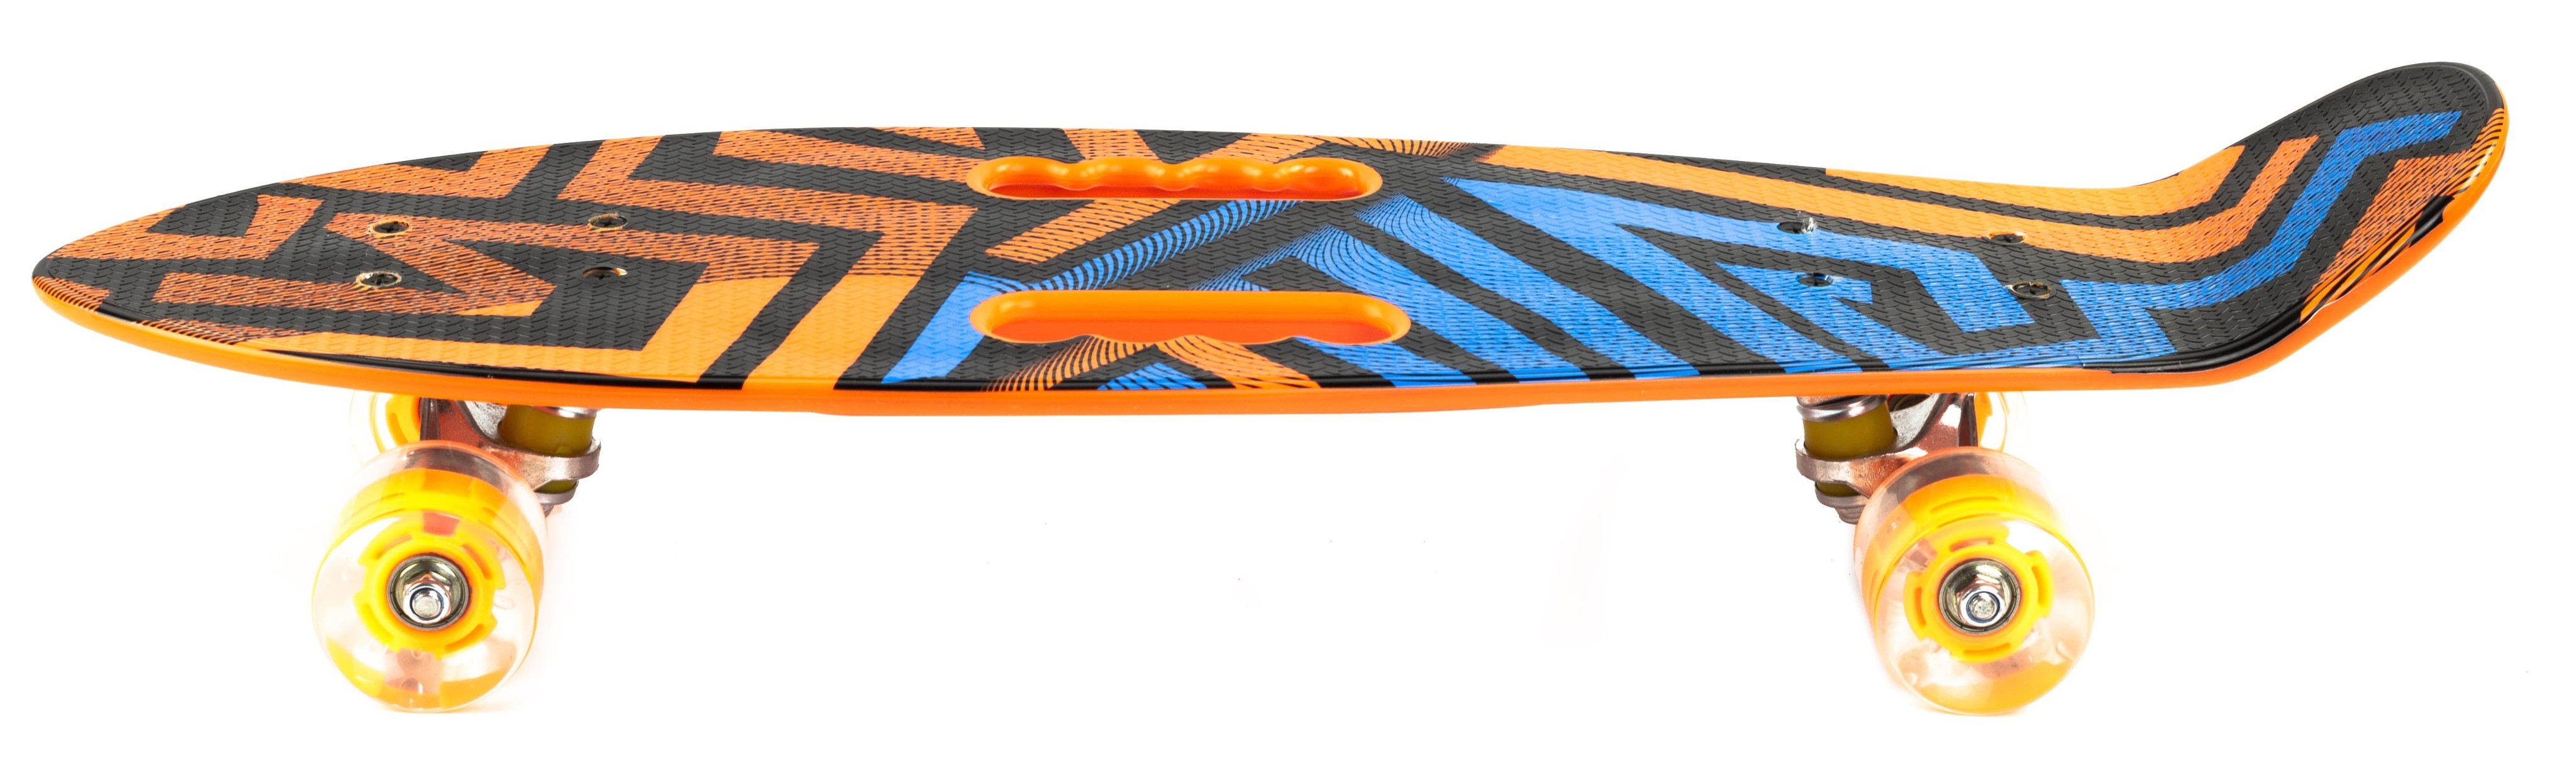 Пенни Борд со светящимися колесами и ручками для переноски, 68 см. S00404 / Оранжевый